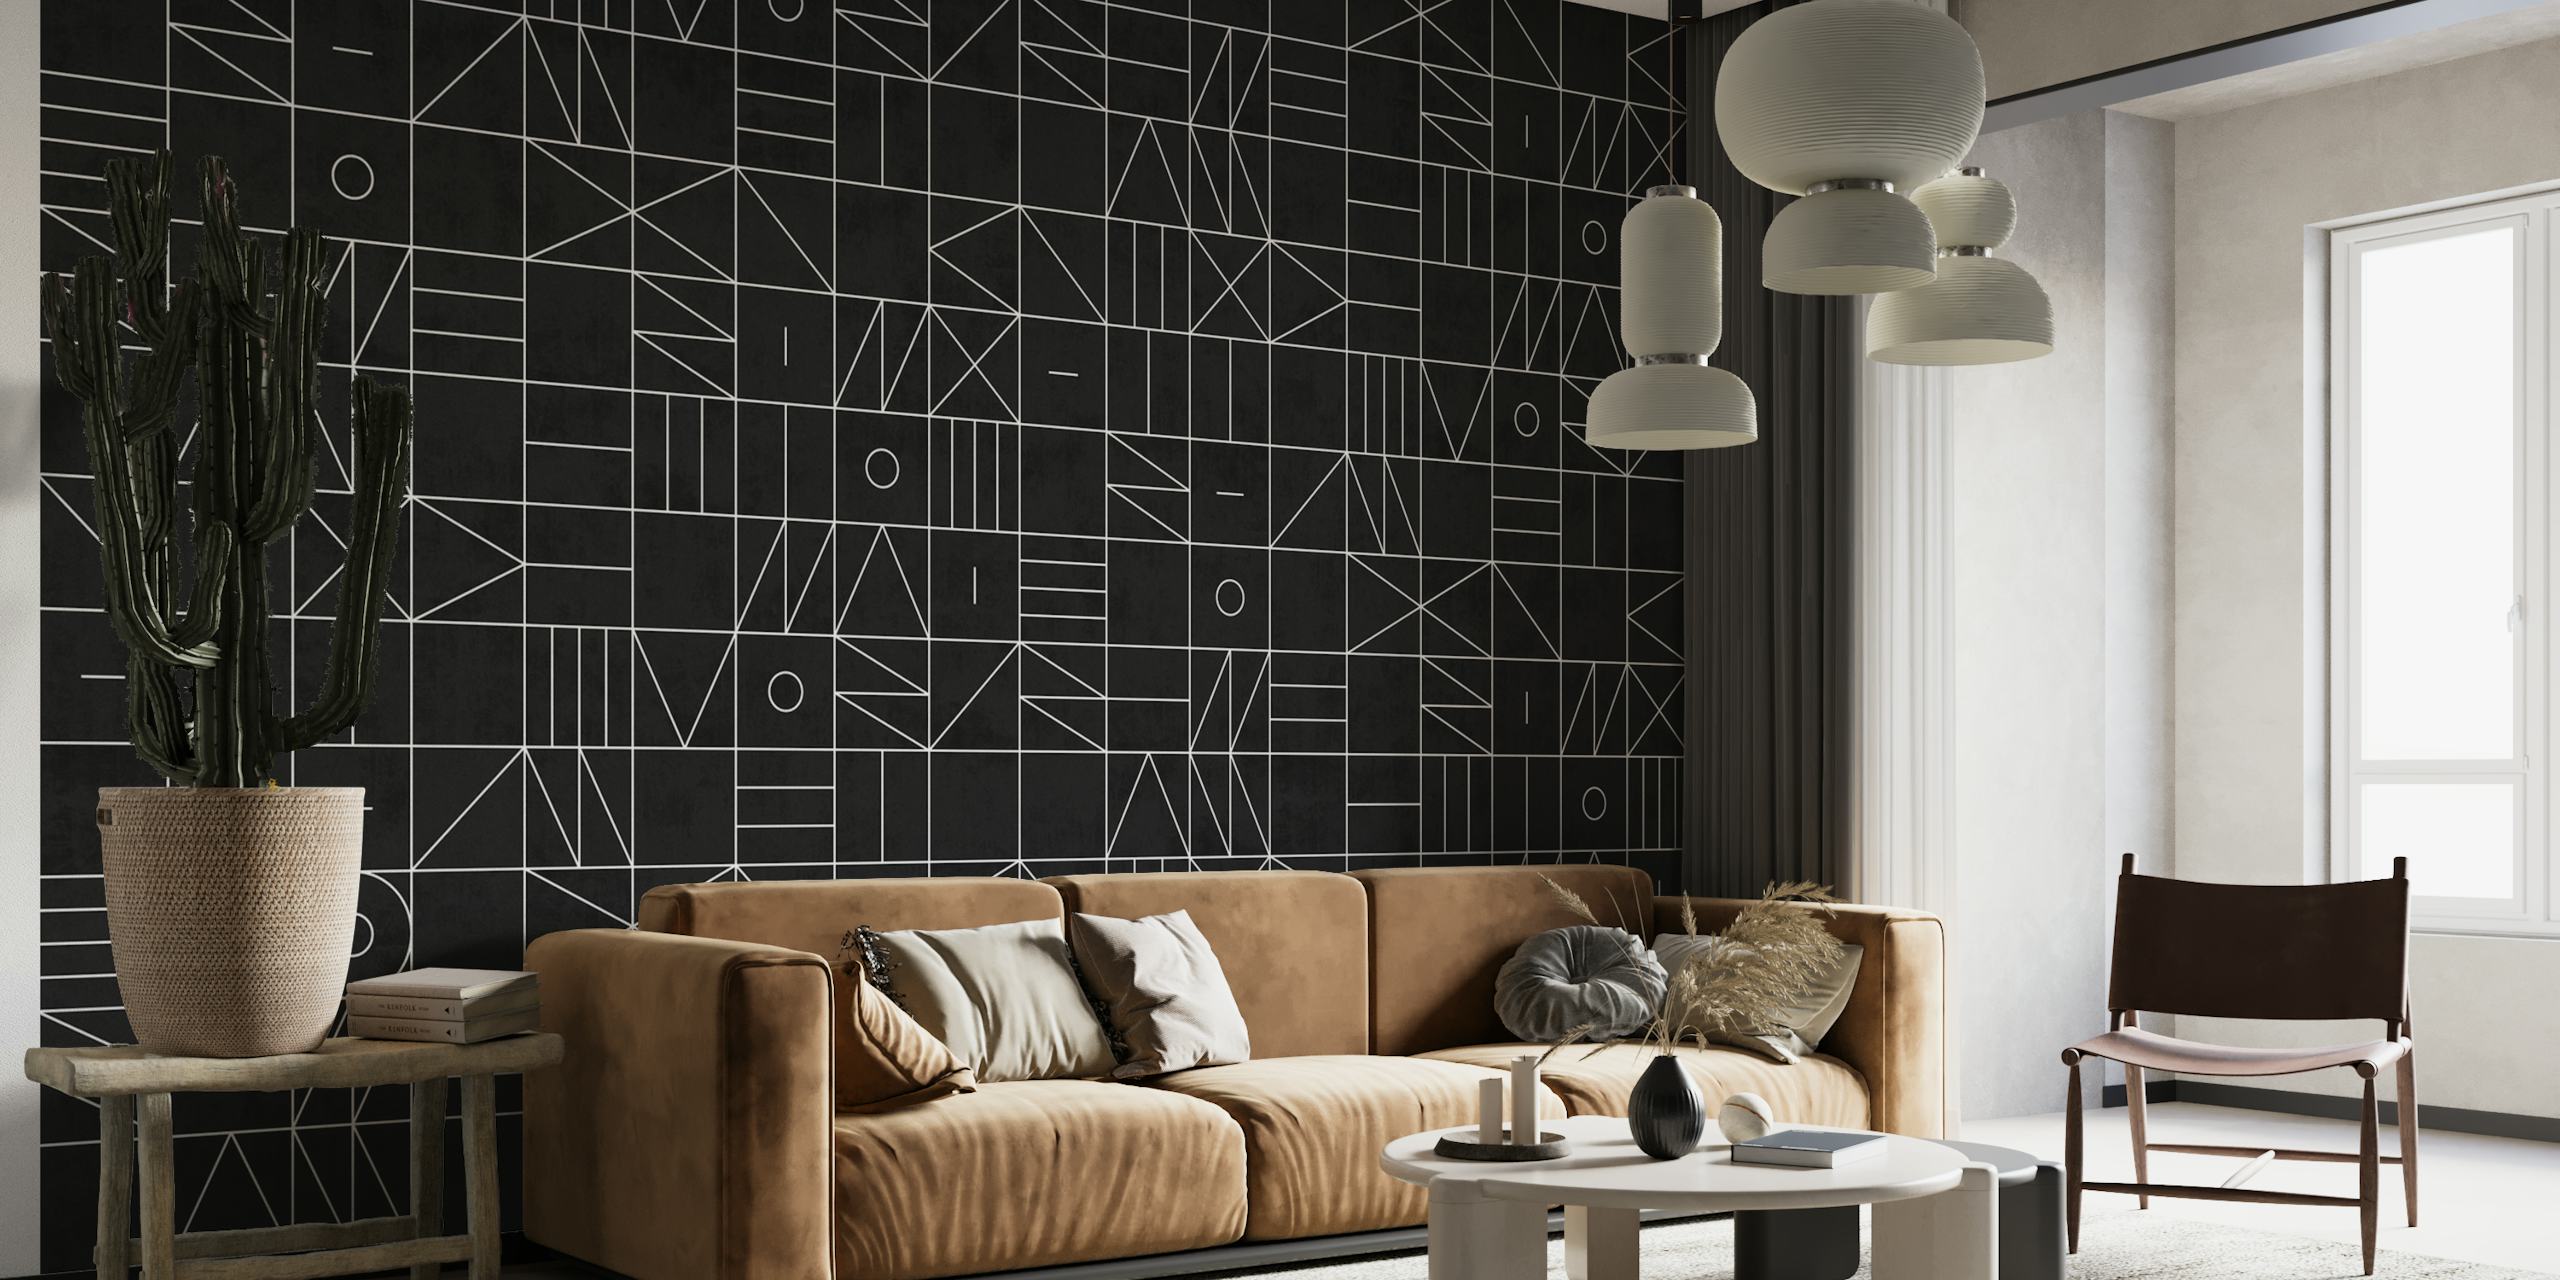 fotomural vinílico de parede com padrão geométrico abstrato em preto e branco